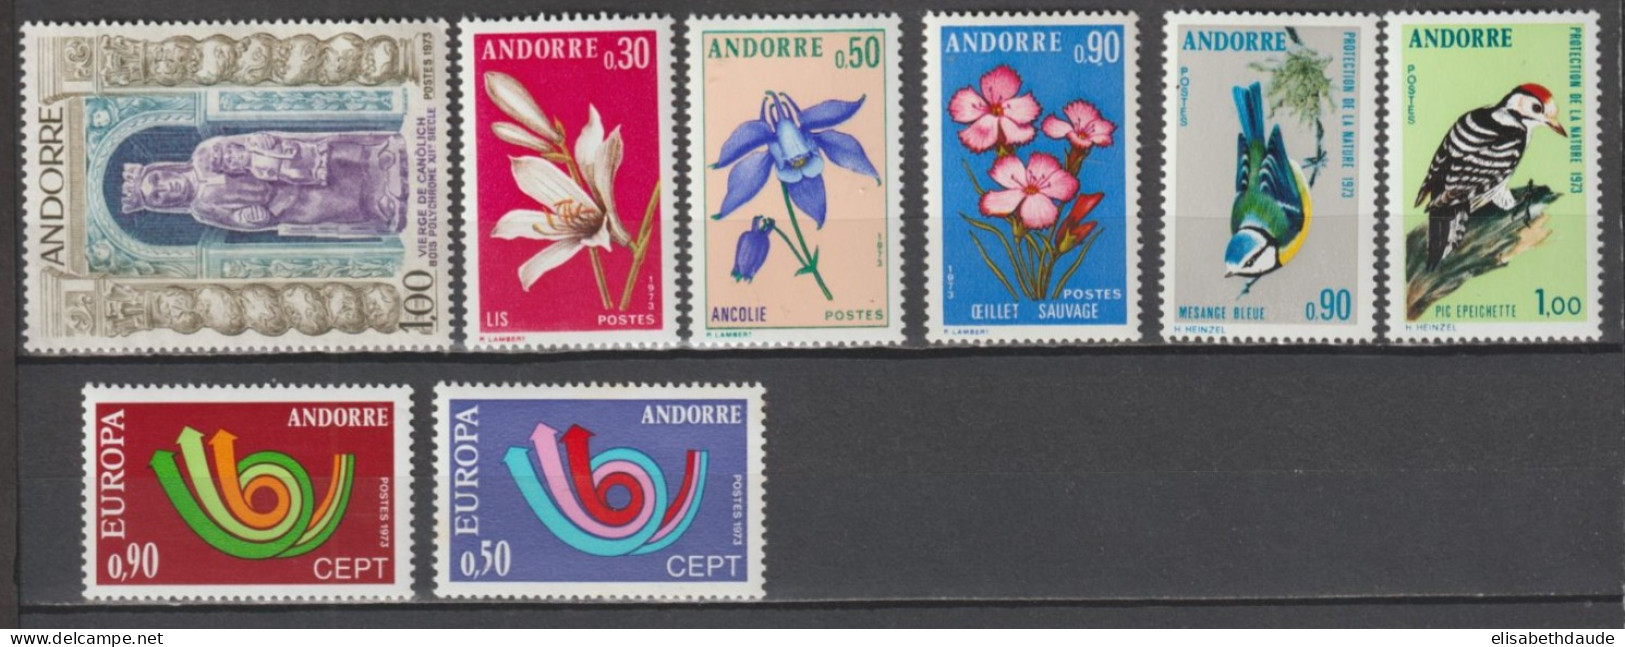 ANDORRE - ANNEE COMPLETE 1973 YVERT N° 226/233 ** MNH - COTE = 51.55 EUR. - - Ganze Jahrgänge